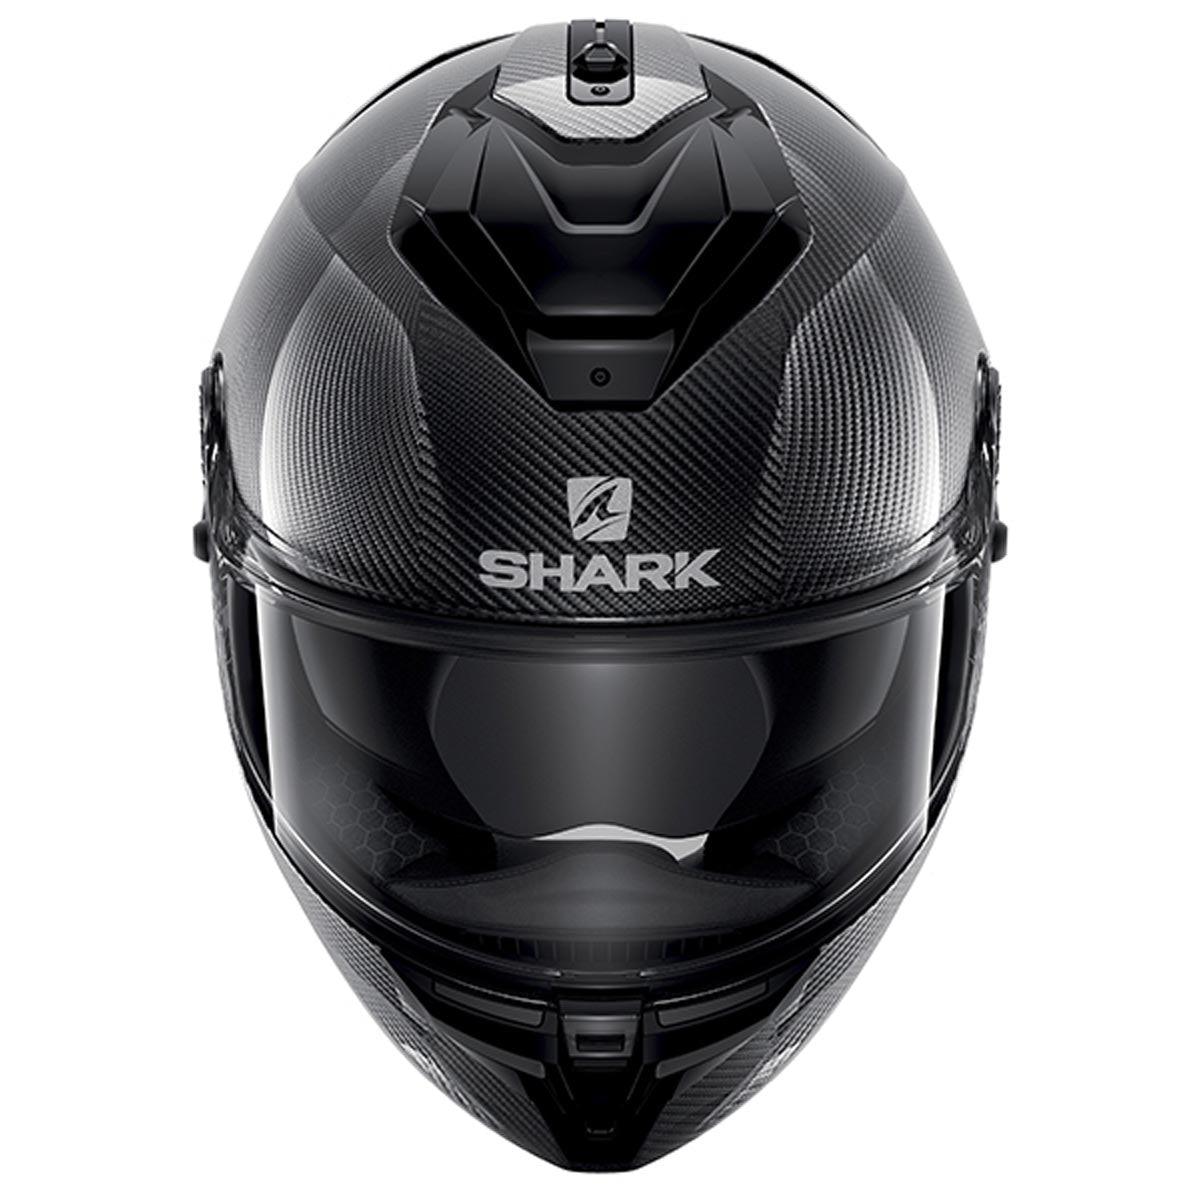 Shark Spartan GT Carbon Gloss Helmet DAD - Carbon Skin - getgearedshop